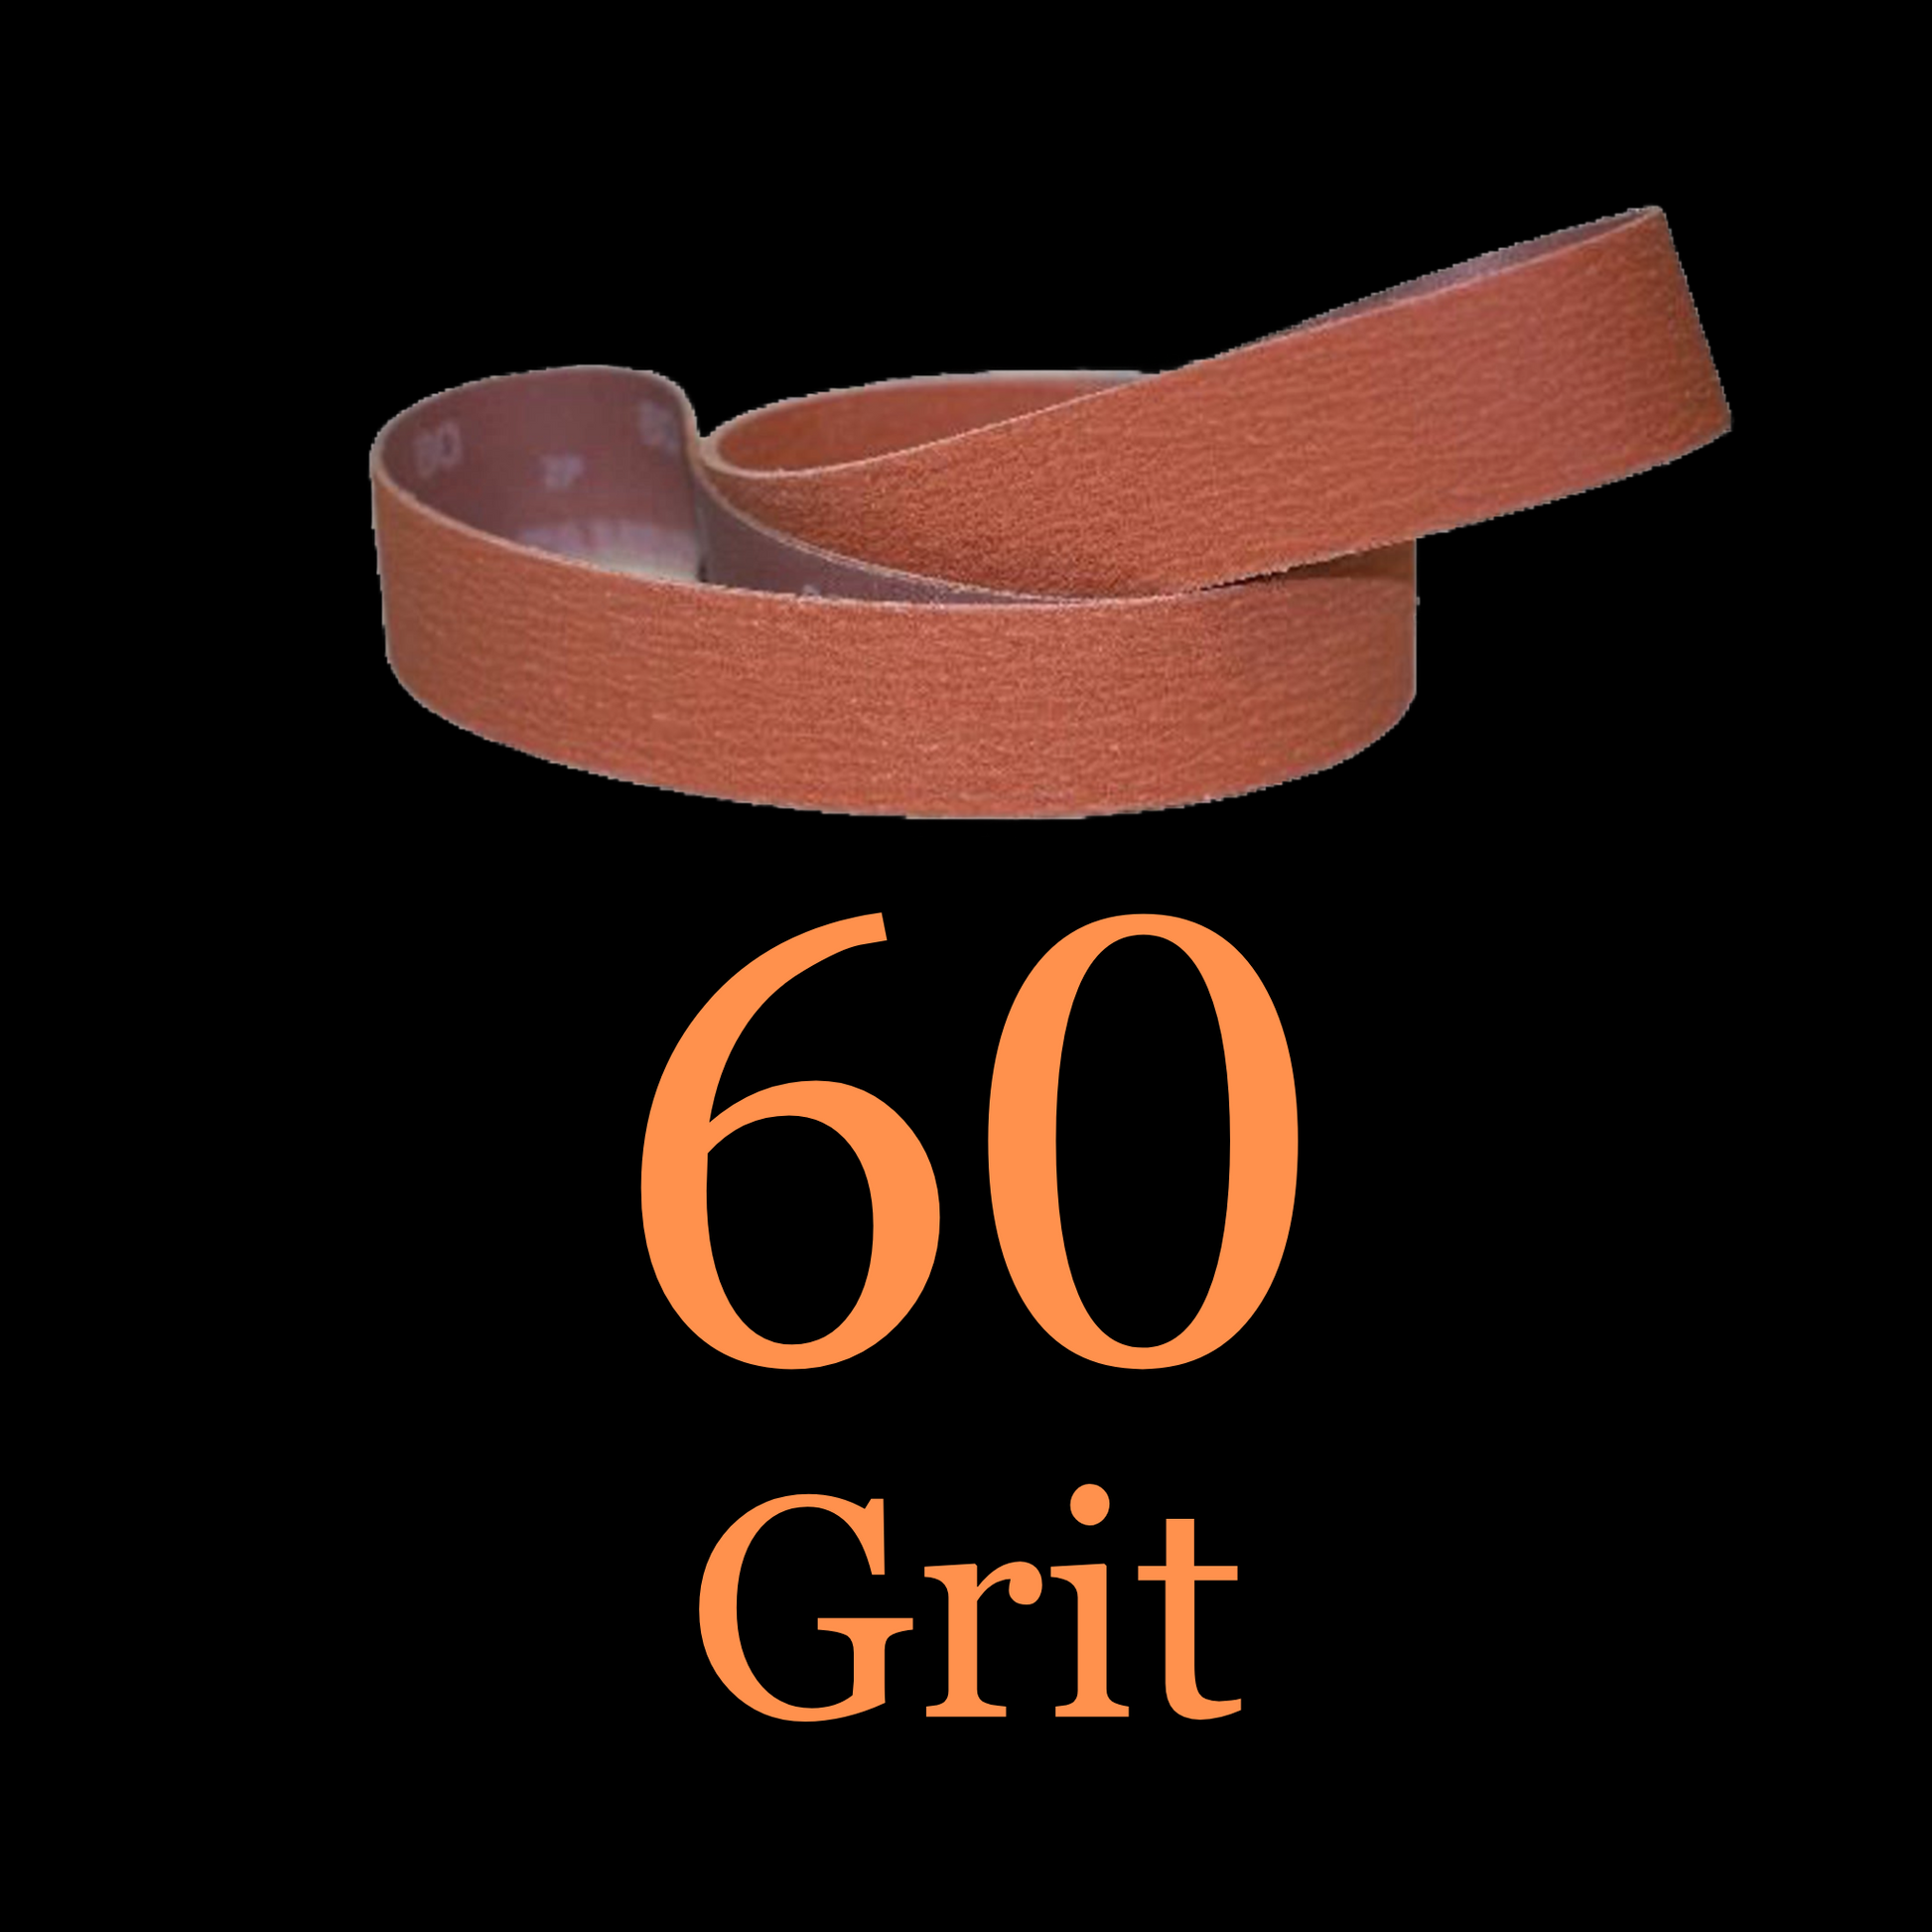 2” x 36” Ceramic Blaze Grinder Belt 60 Grit